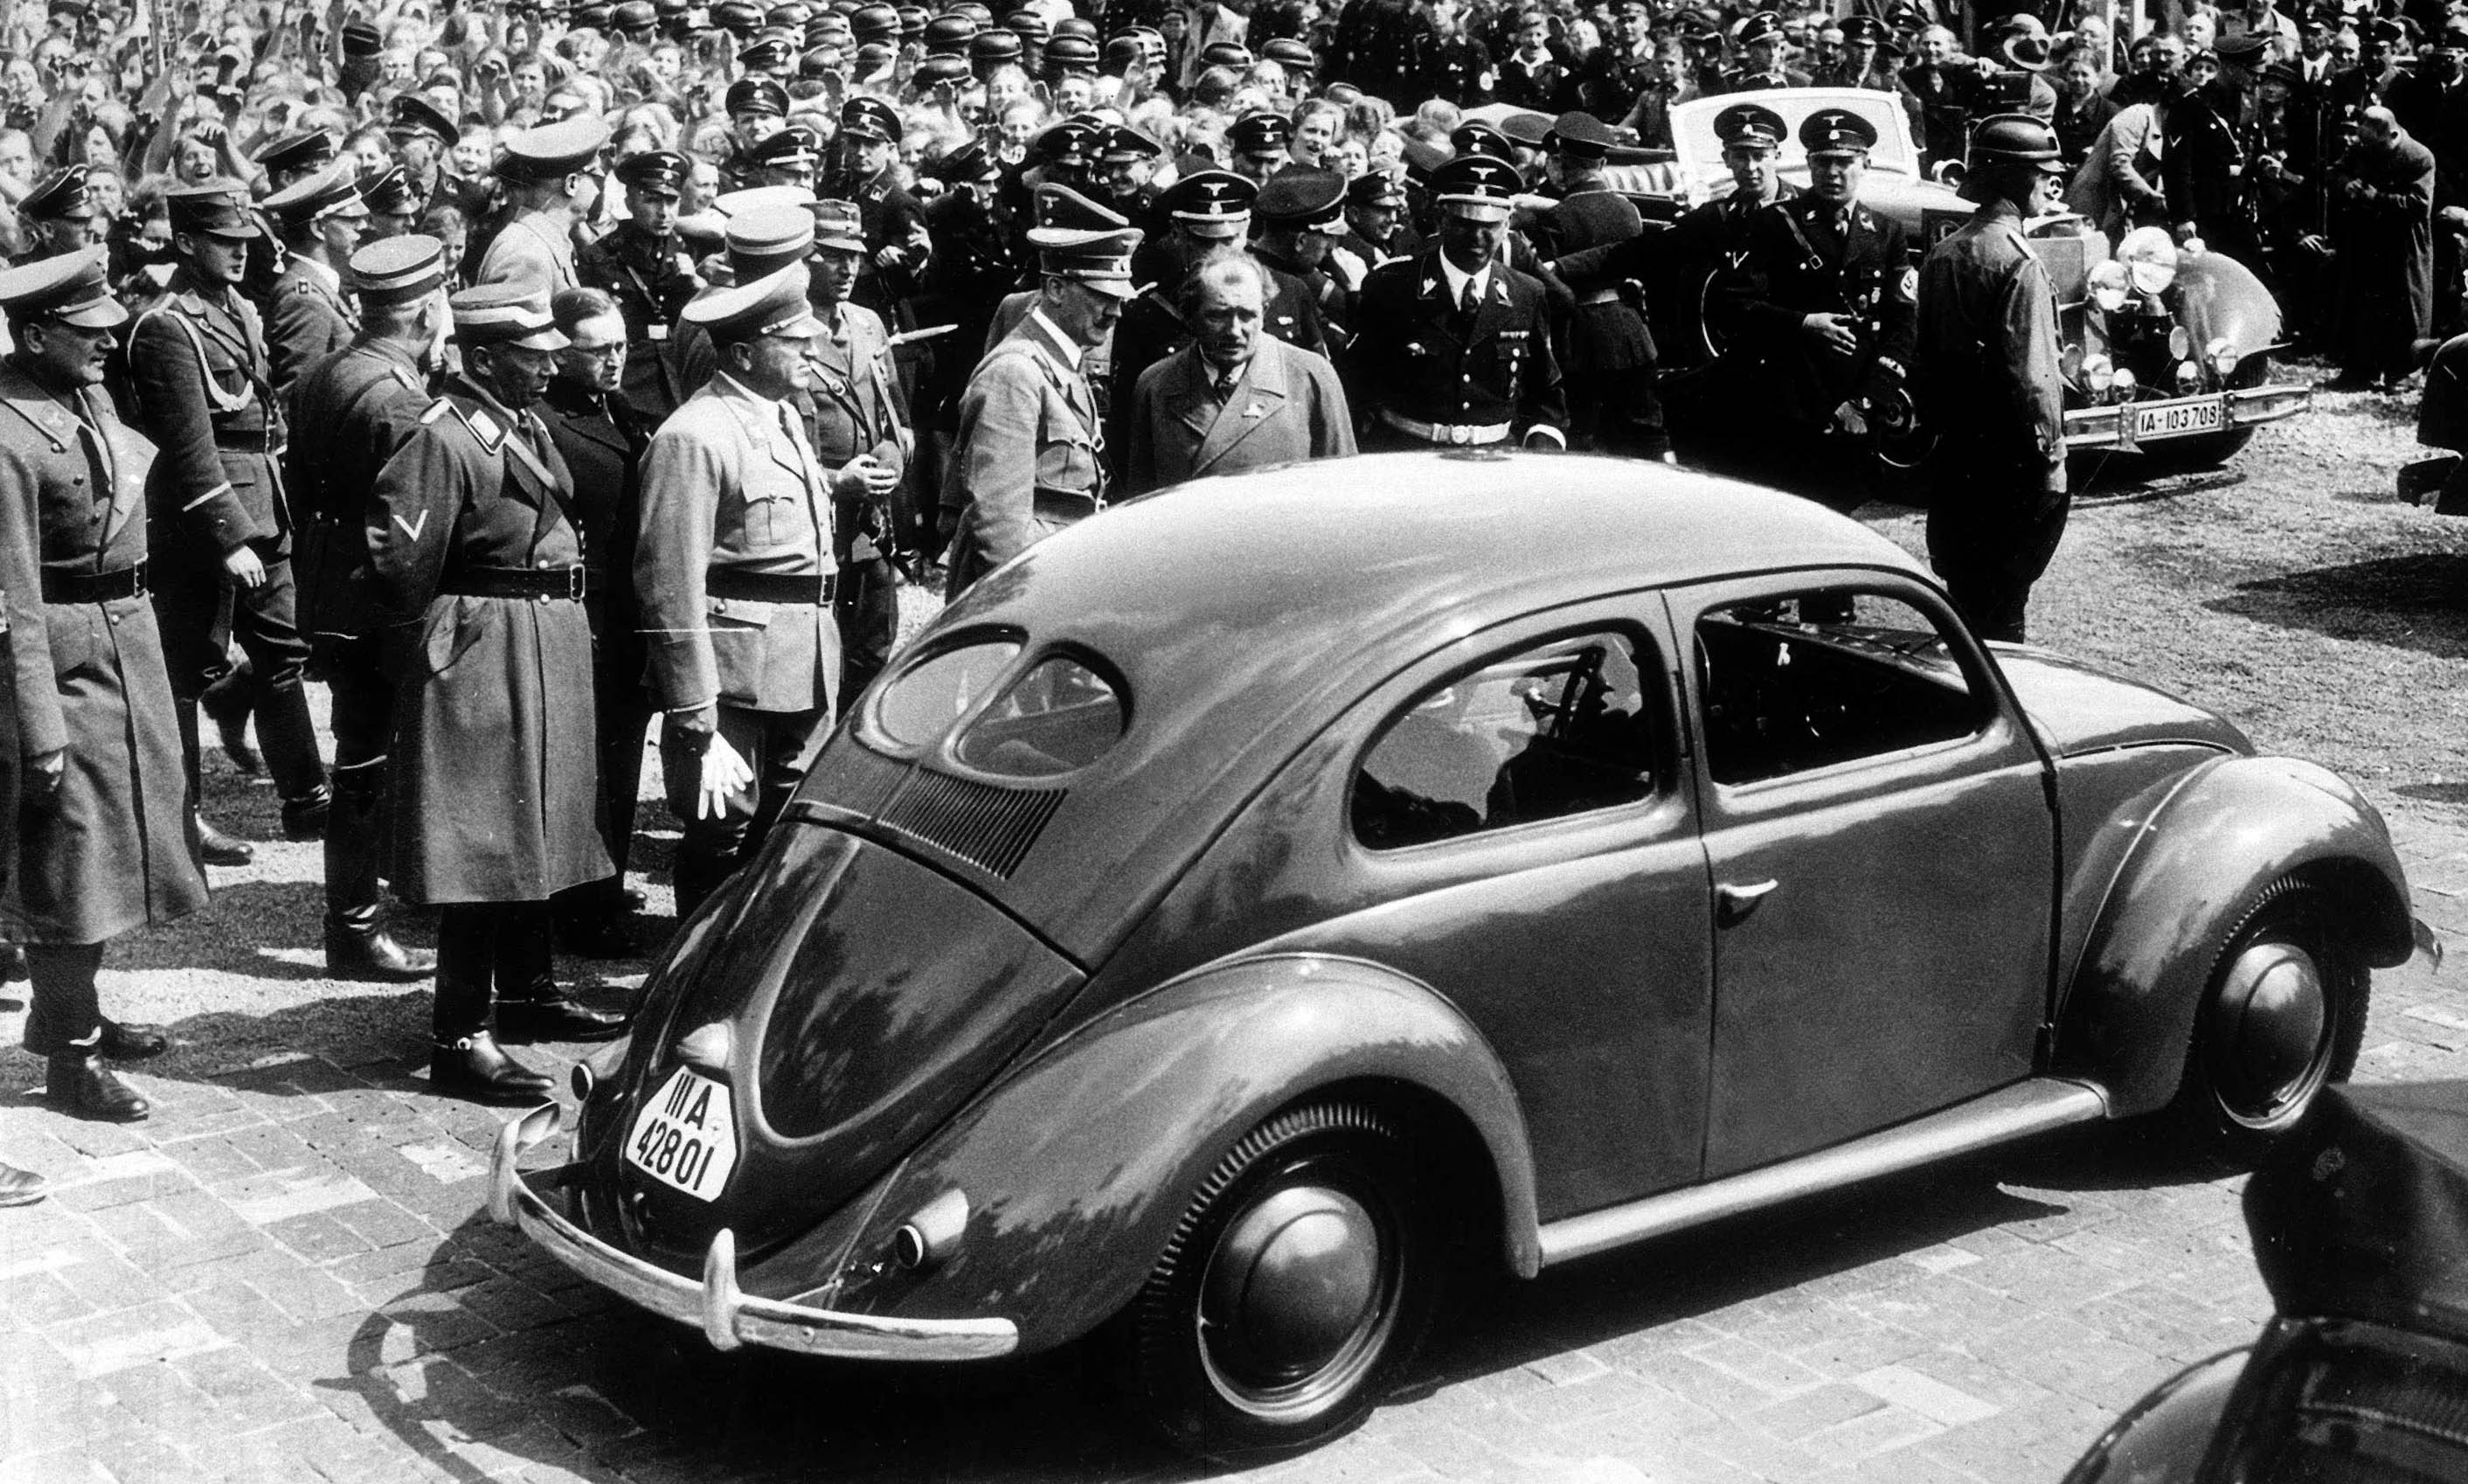 Fersinand Porsche Adolf Hitler Volkswagen KdF Wagen